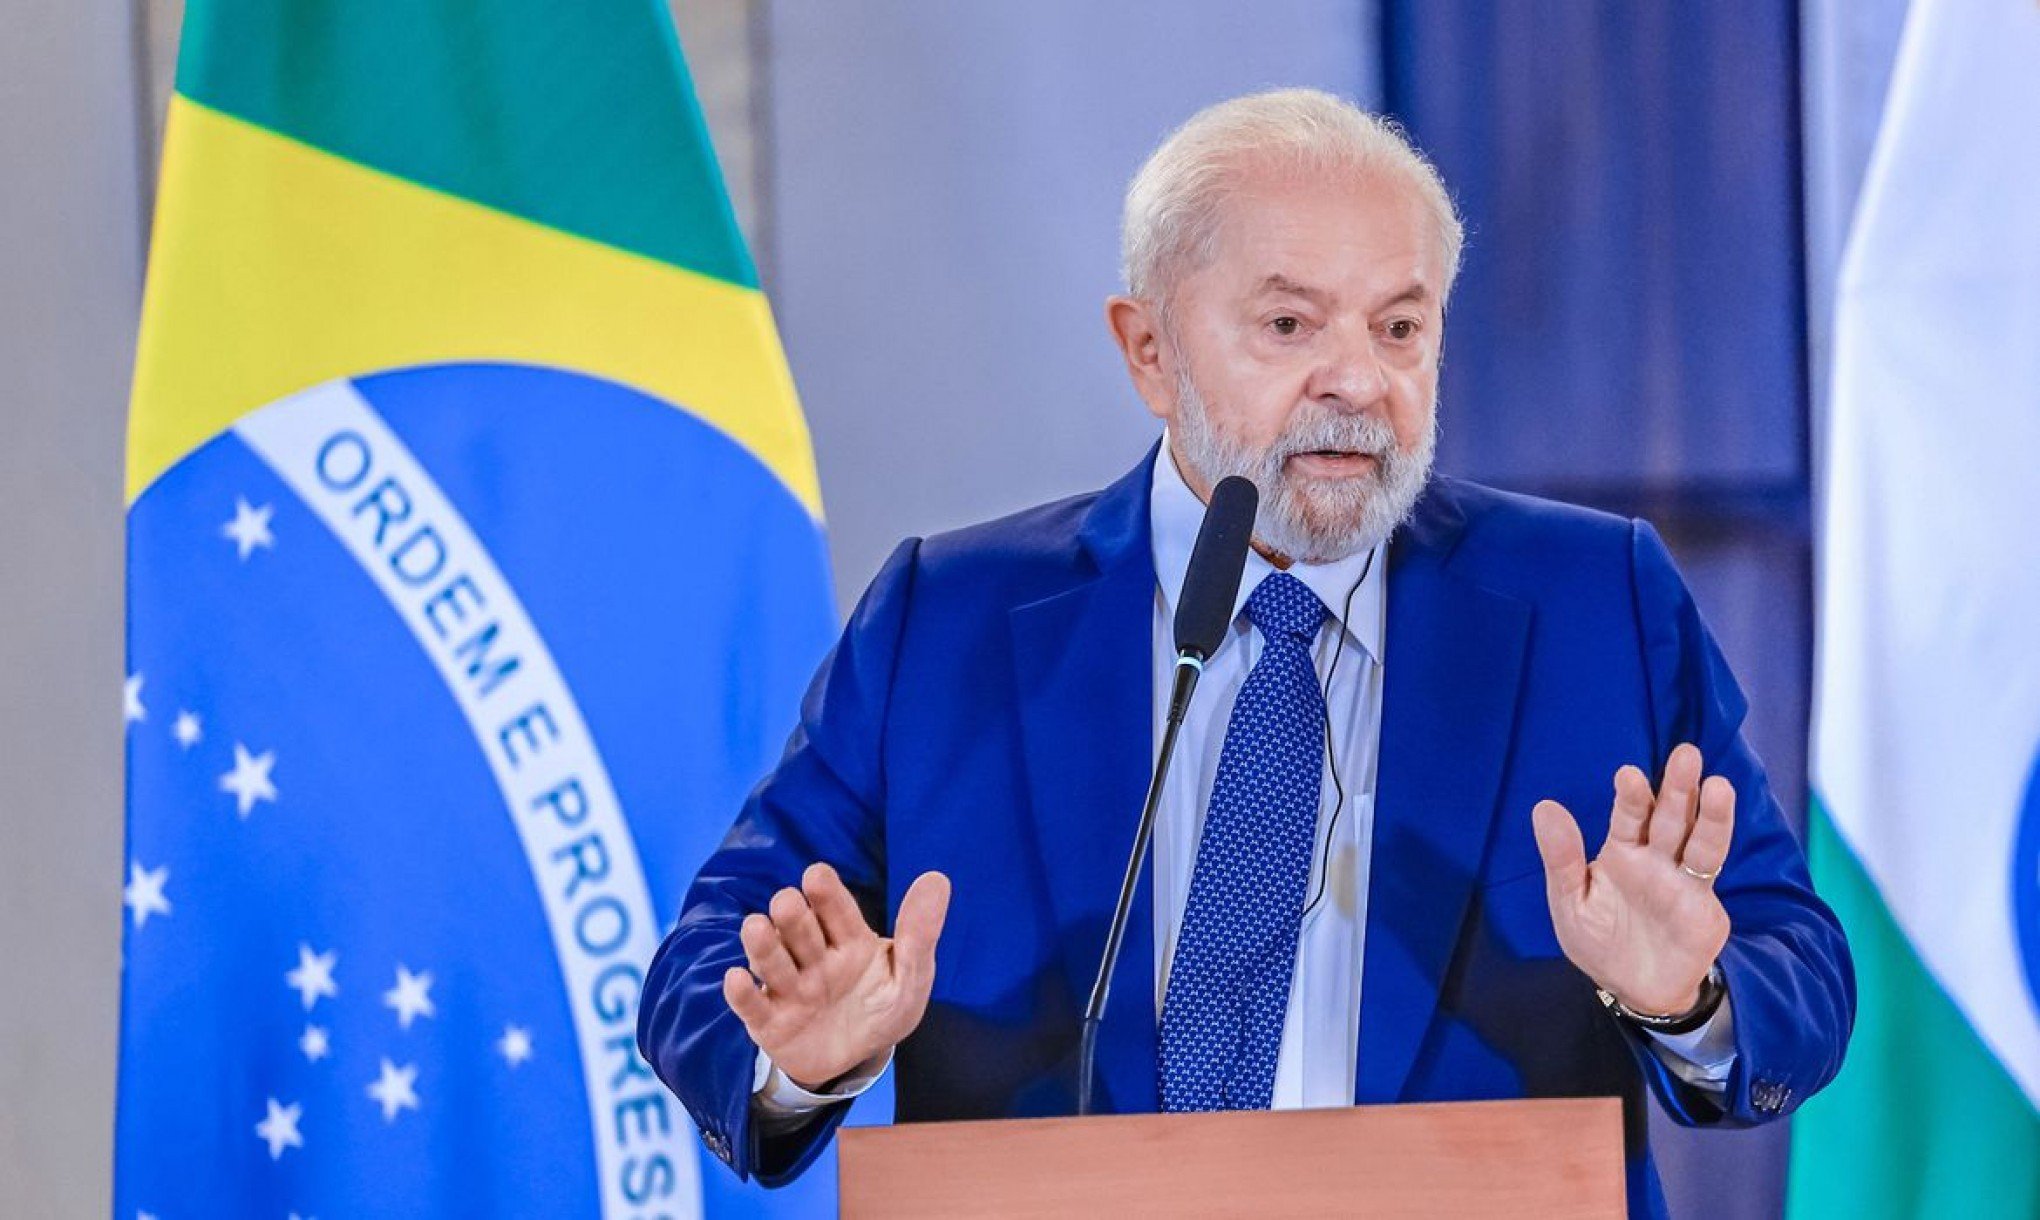 Lula critica possibilidade de conflito e diz que espera bom senso de Venezuela e Guiana